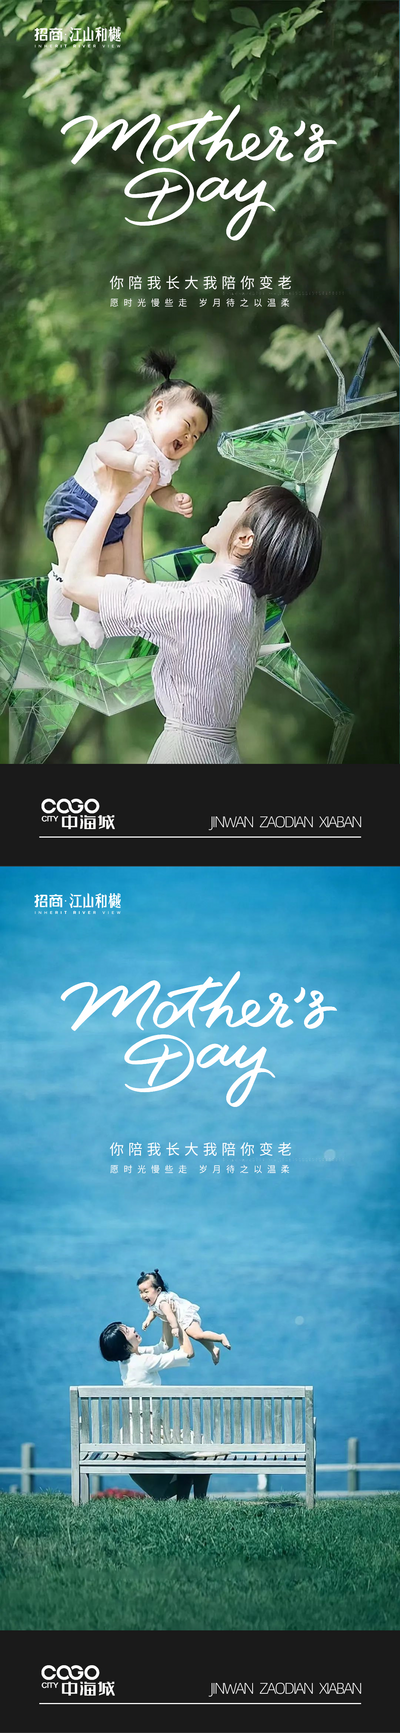 南门网 广告 海波 节日 母亲节 母子 温馨 系列